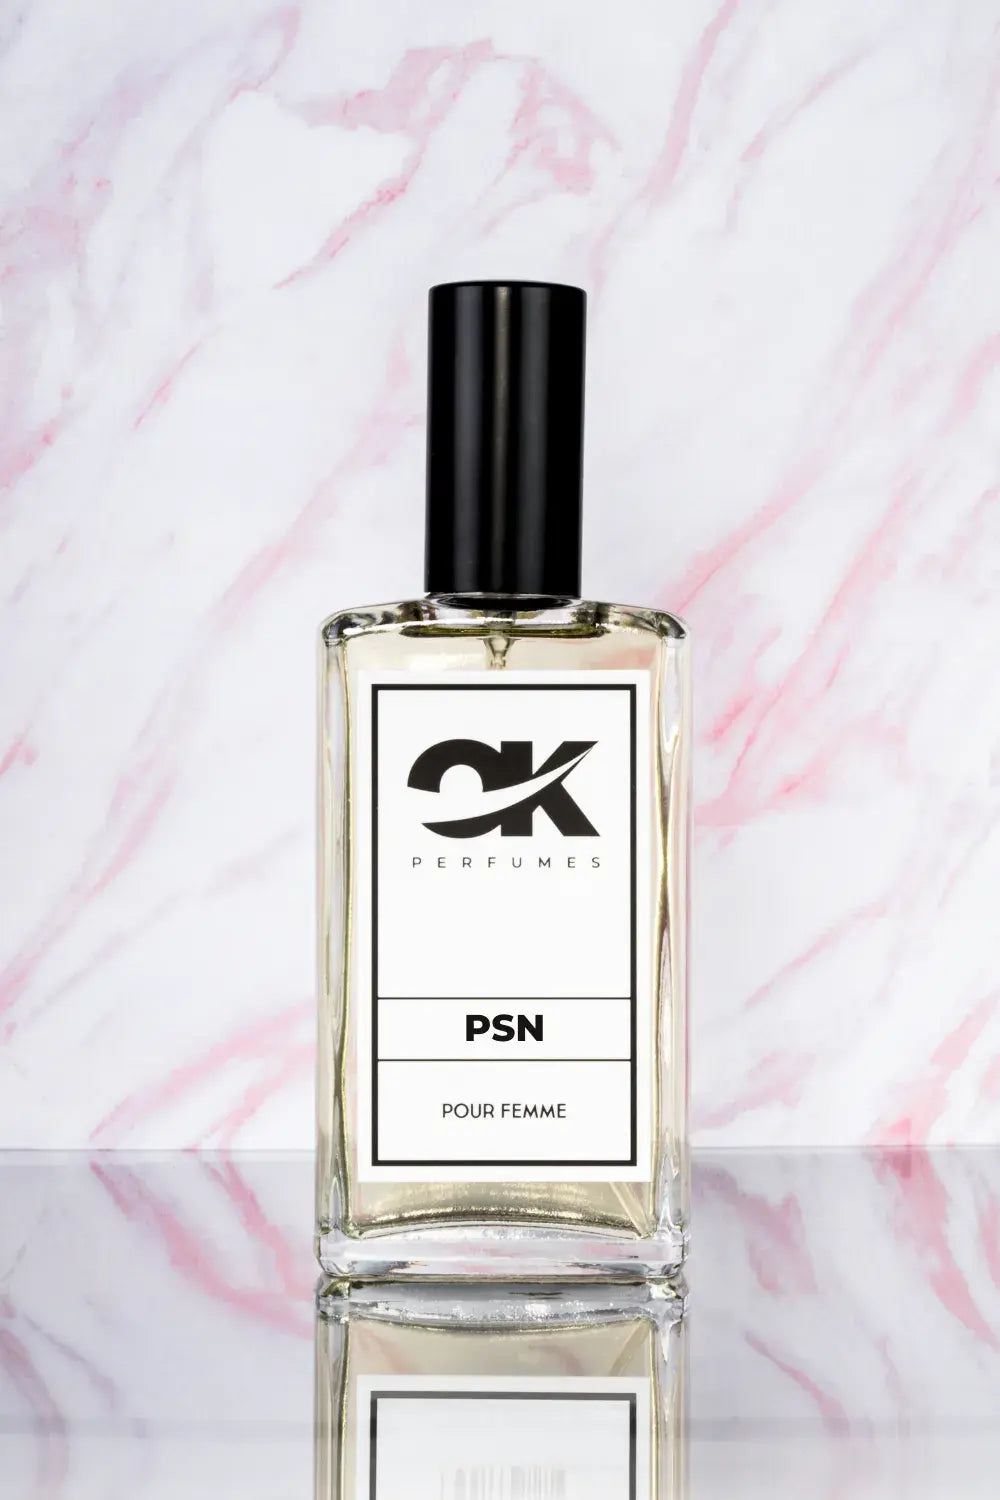 PSN - Recuerda a Poison Girl de Dior